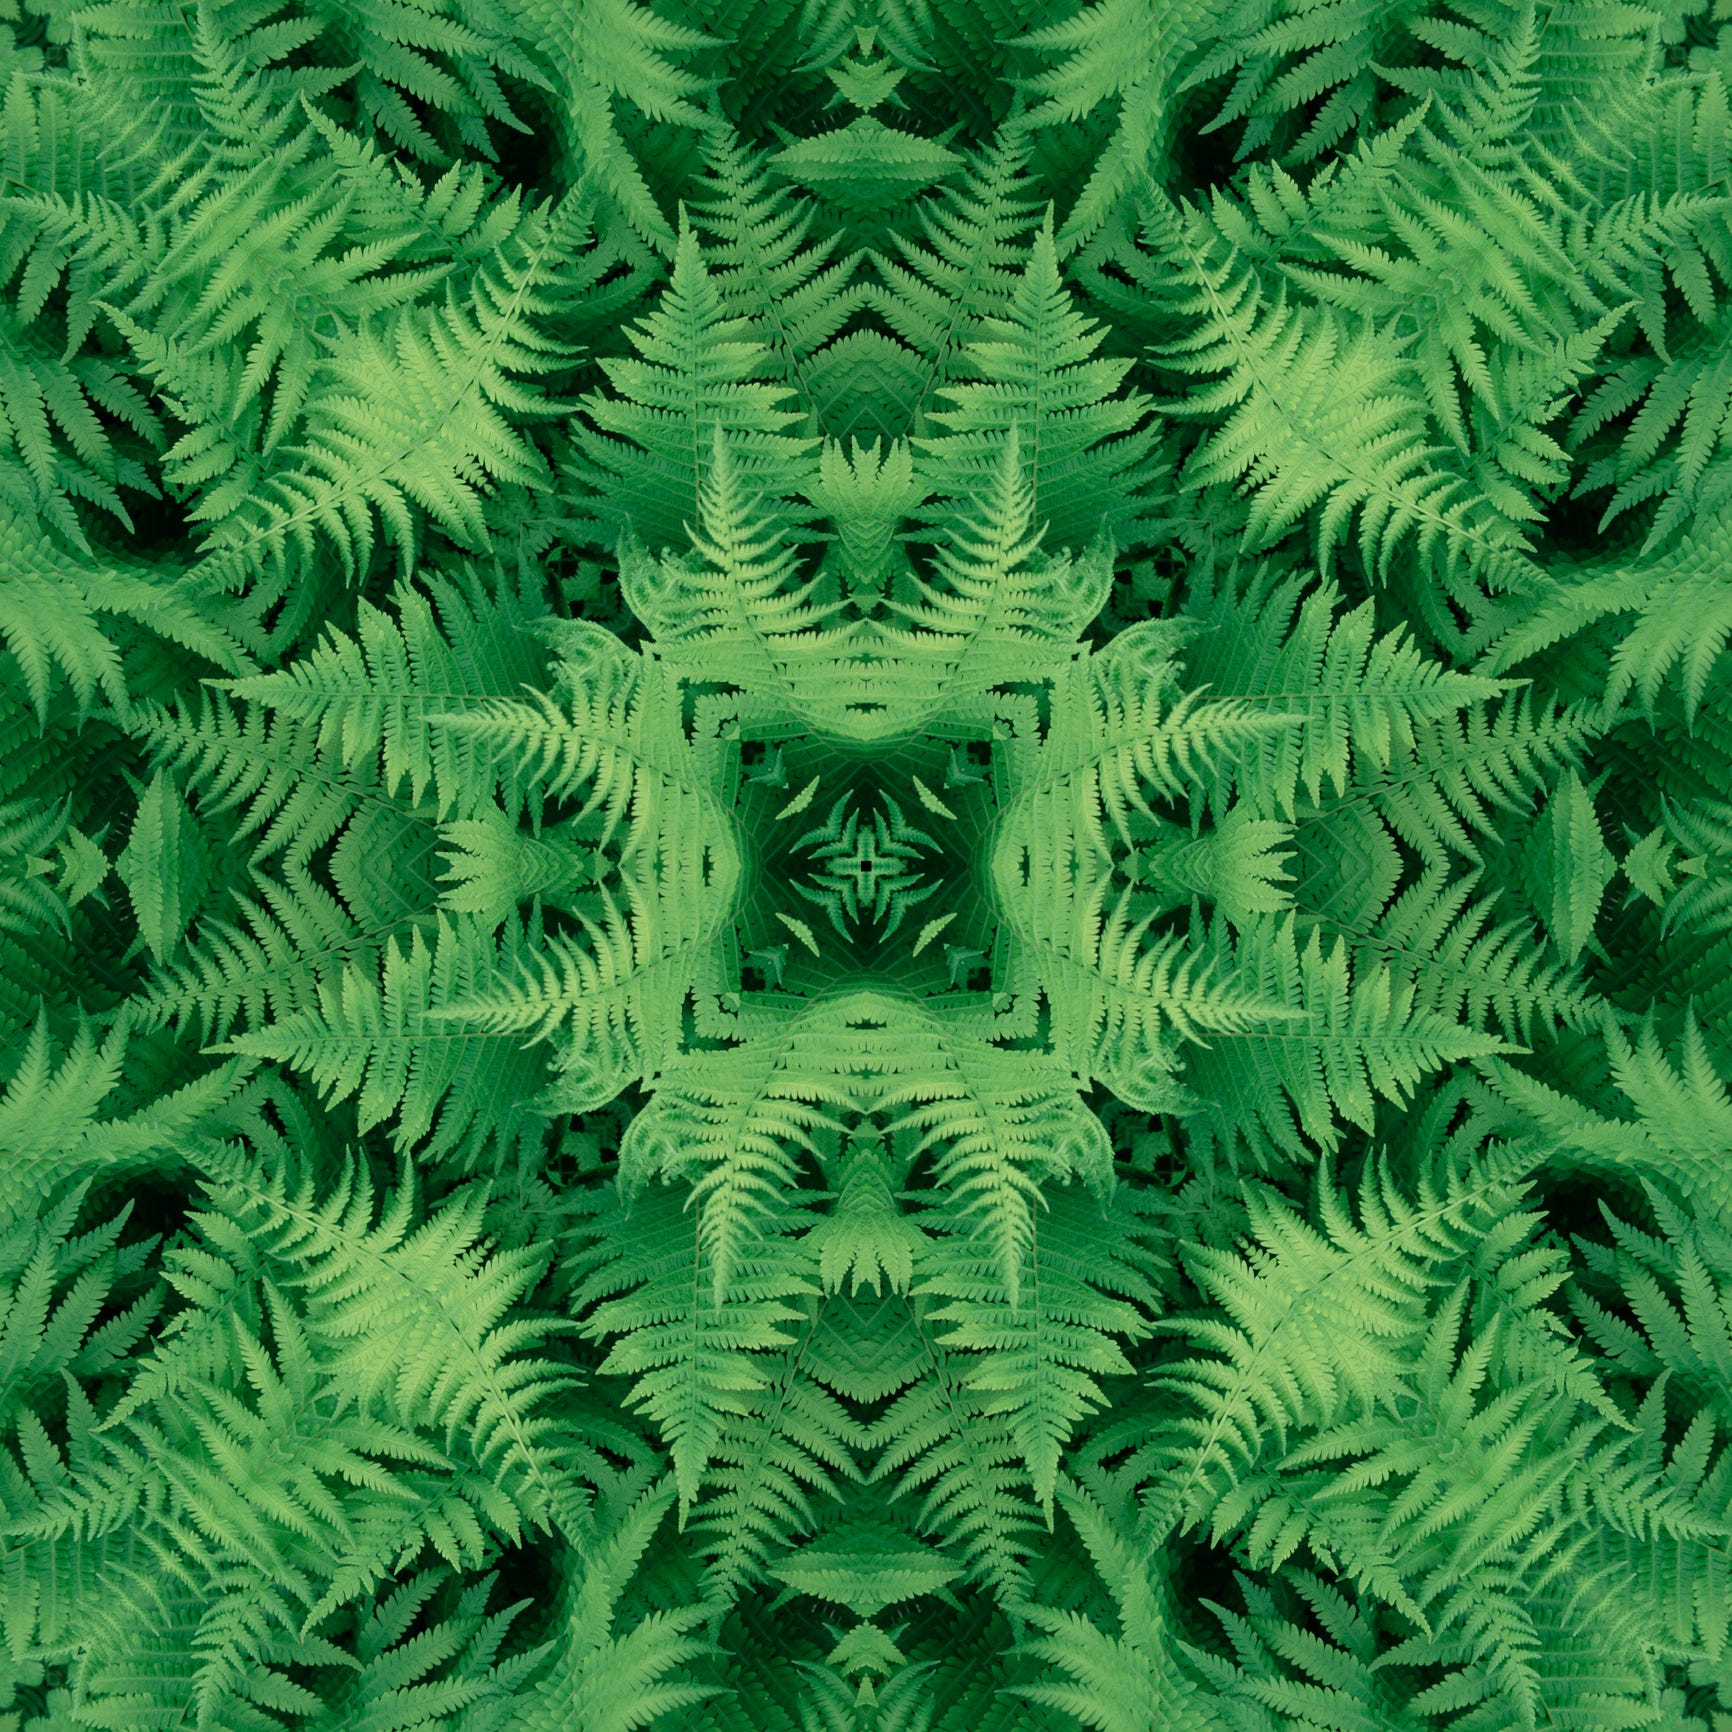 Mandala of ferns